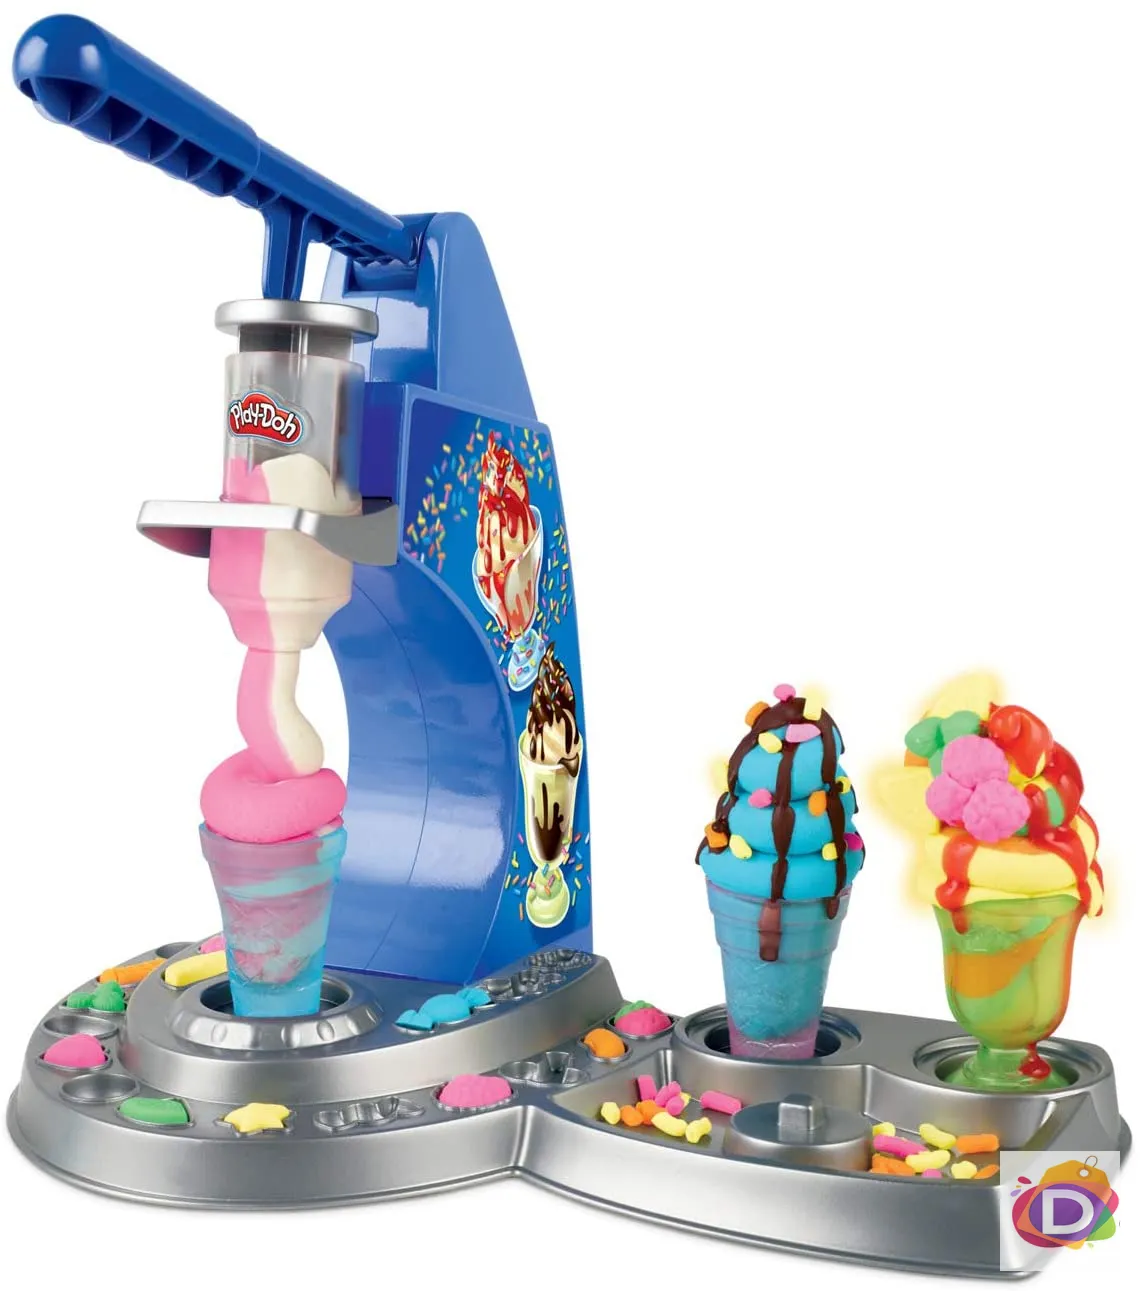 PLAY-DOH KITCHEN CREATIONS Машина за сладолед със сироп - Код 1383 3